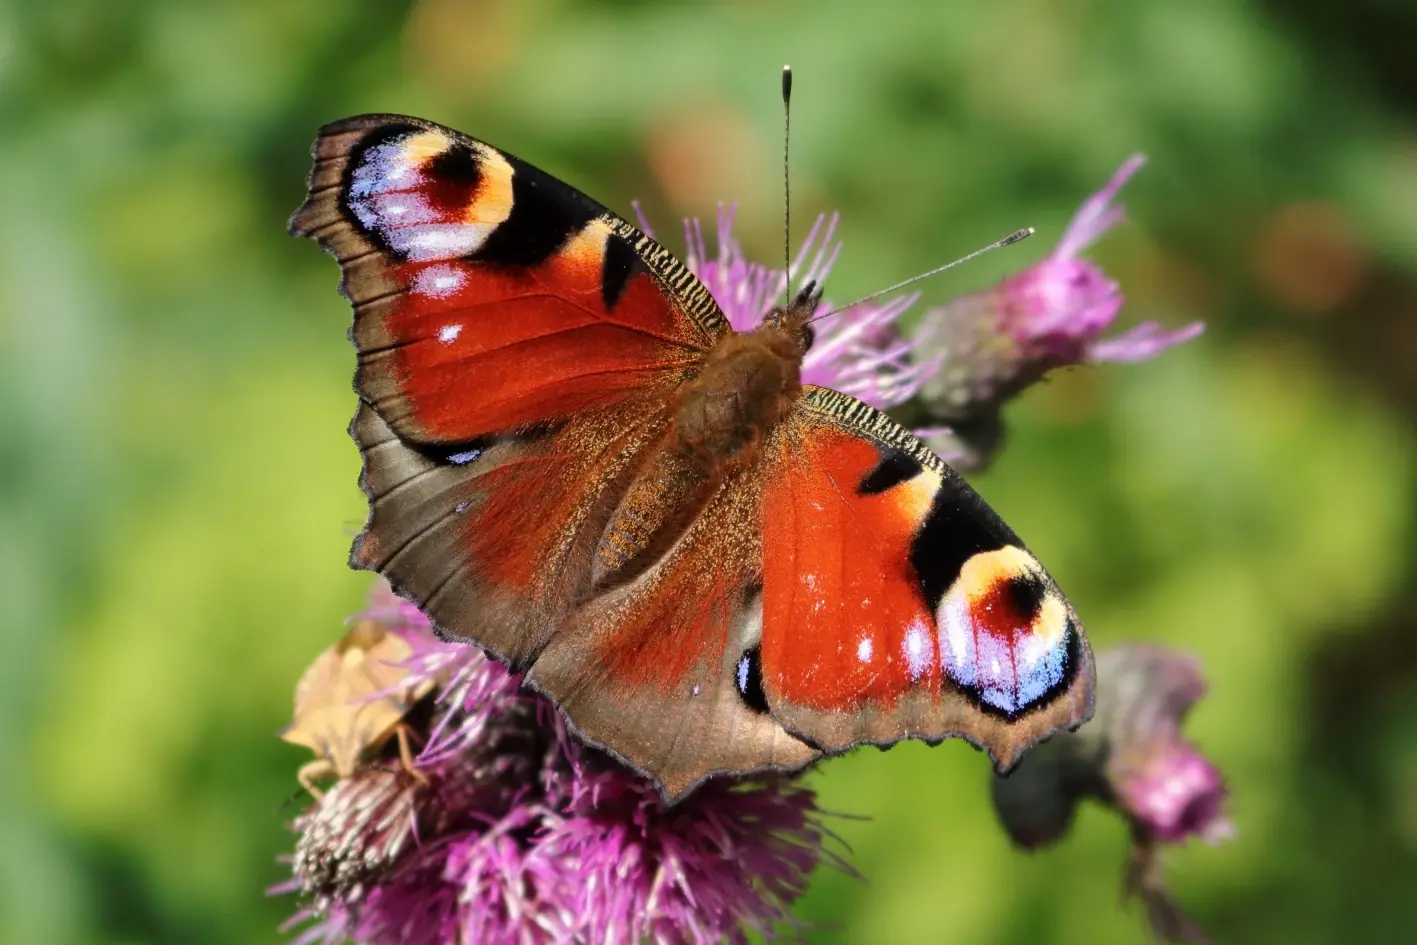 Schmetterlinge - Tagpfauenauge von oben. Die roten Flügel sind mit blau-gelben Augen besetzt. Der Schmetterling selbst hat eine braune Färbung und ist mit Haaren besetzt.